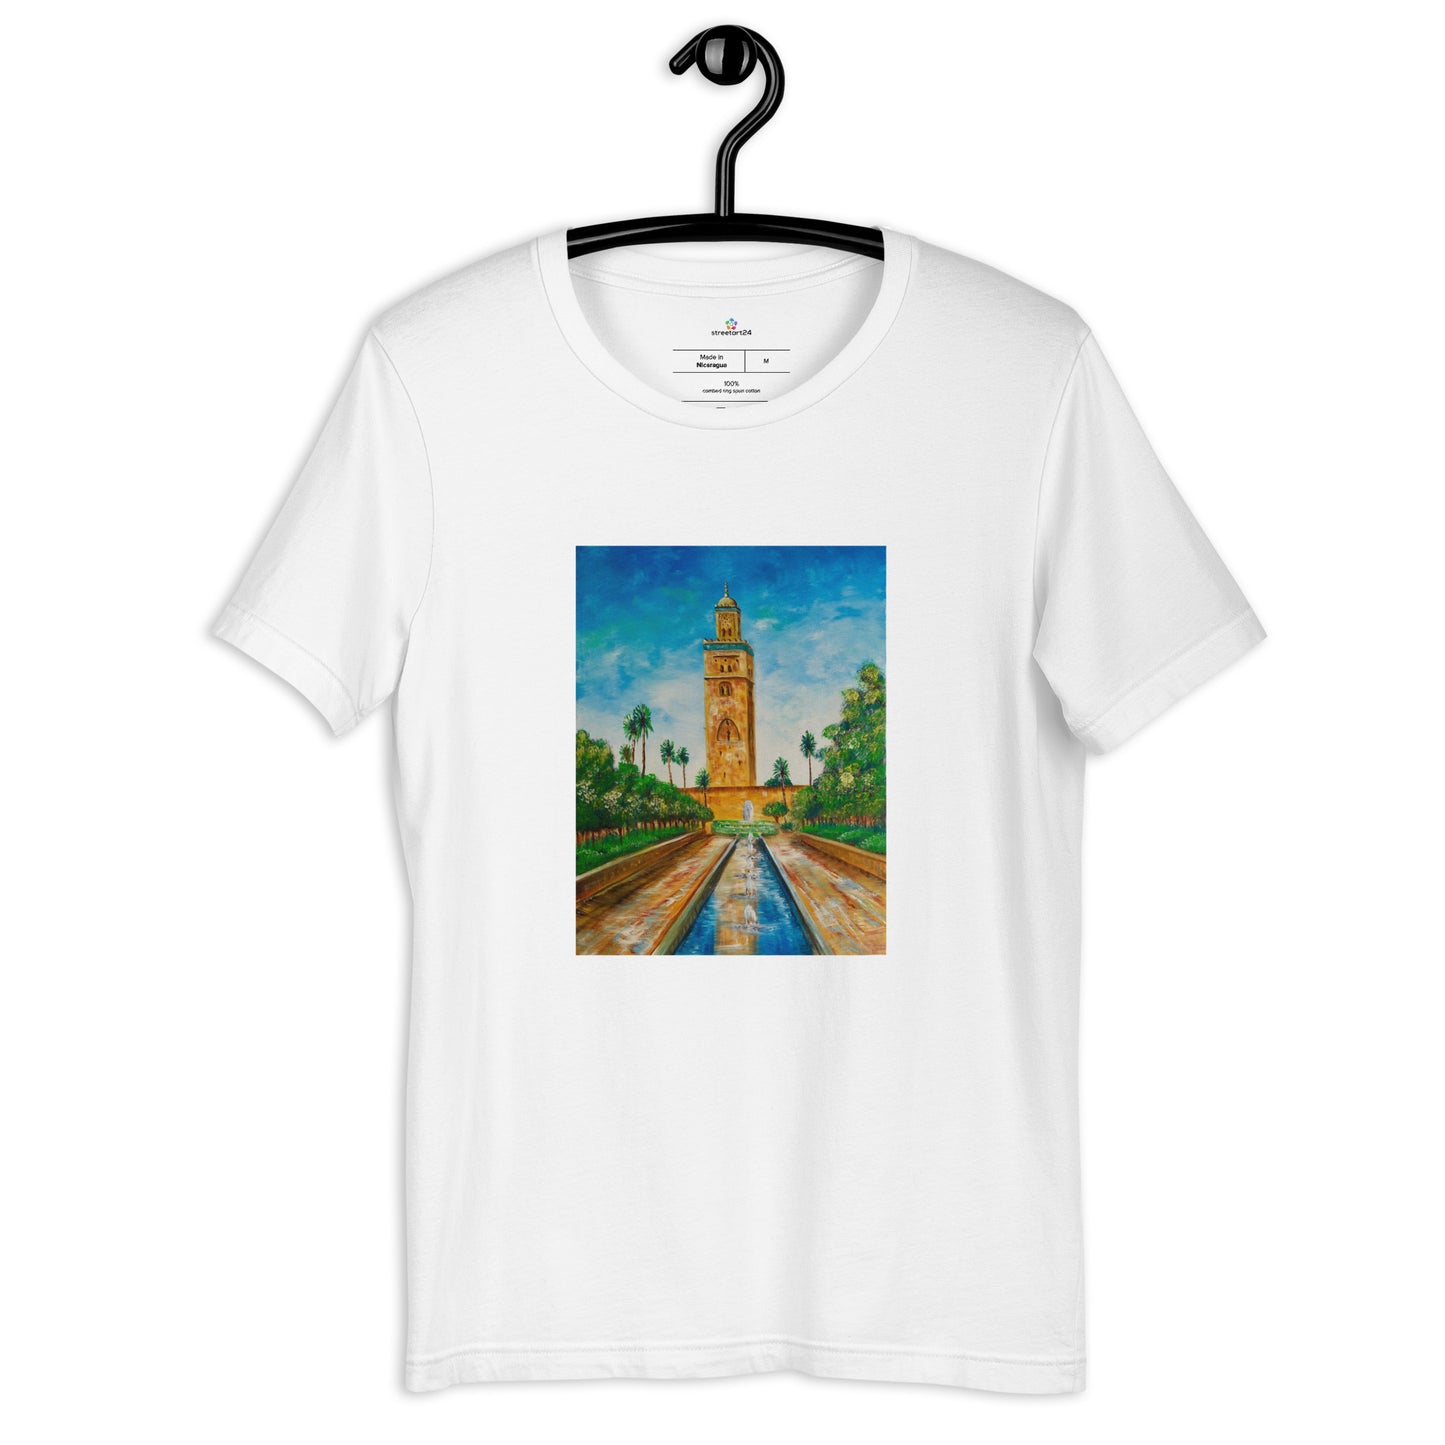 "The Mosque of Marrakech" Unisex Short Sleeve T-Shirt